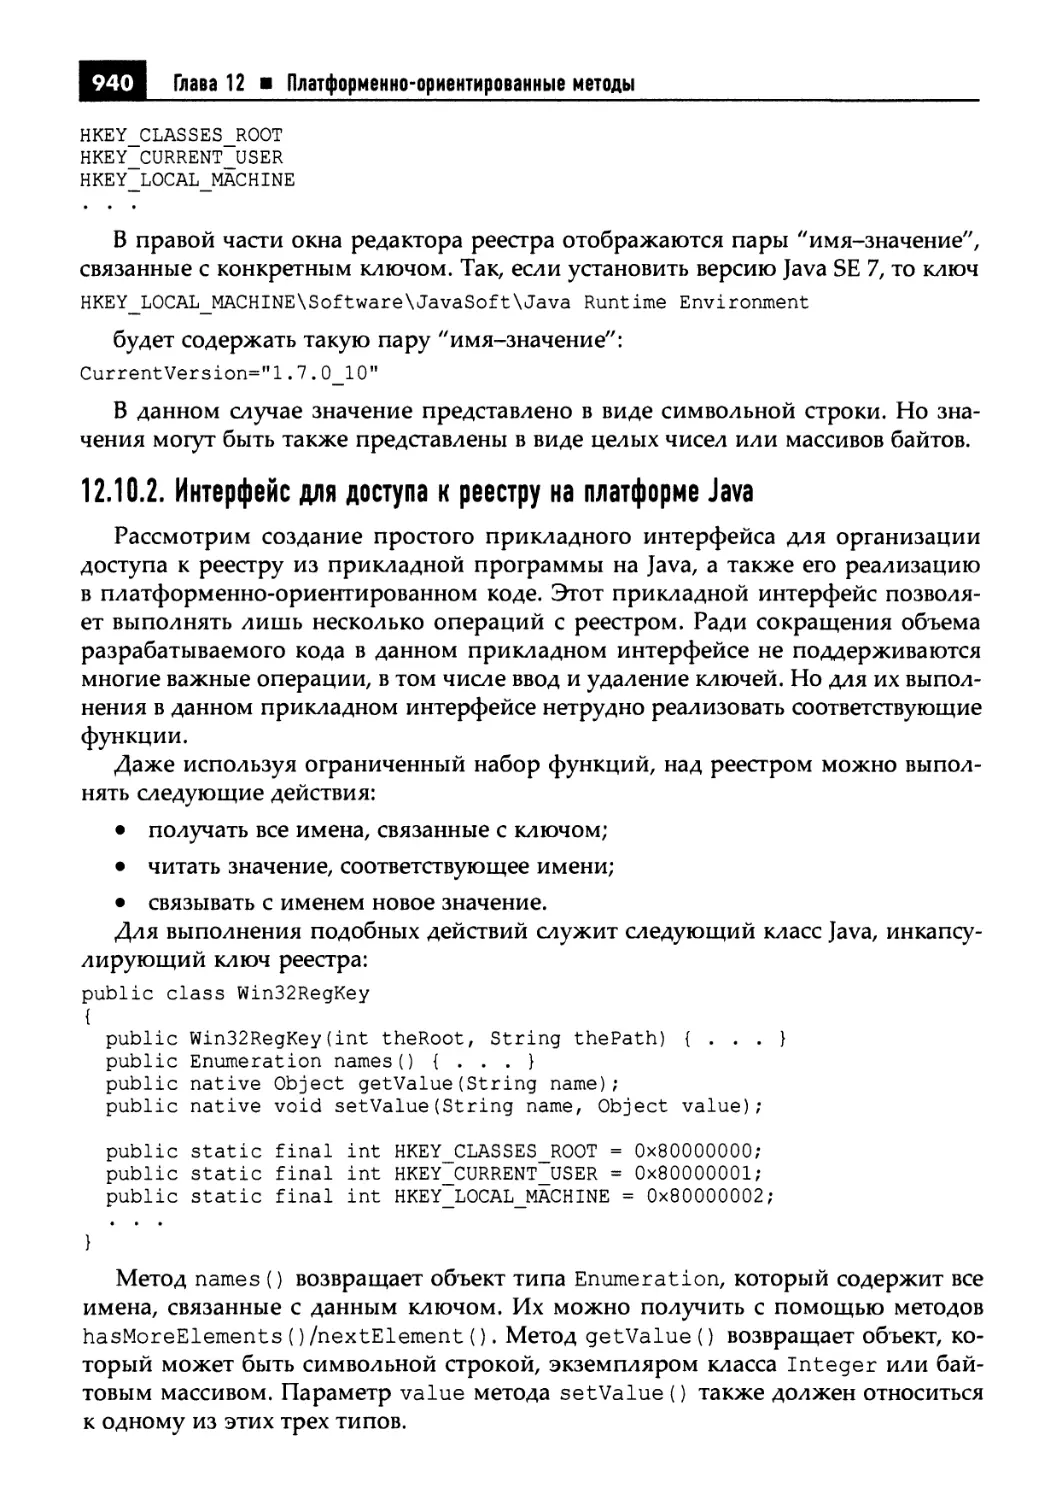 12.10.2. Интерфейс для доступа к реестру на платформе Java